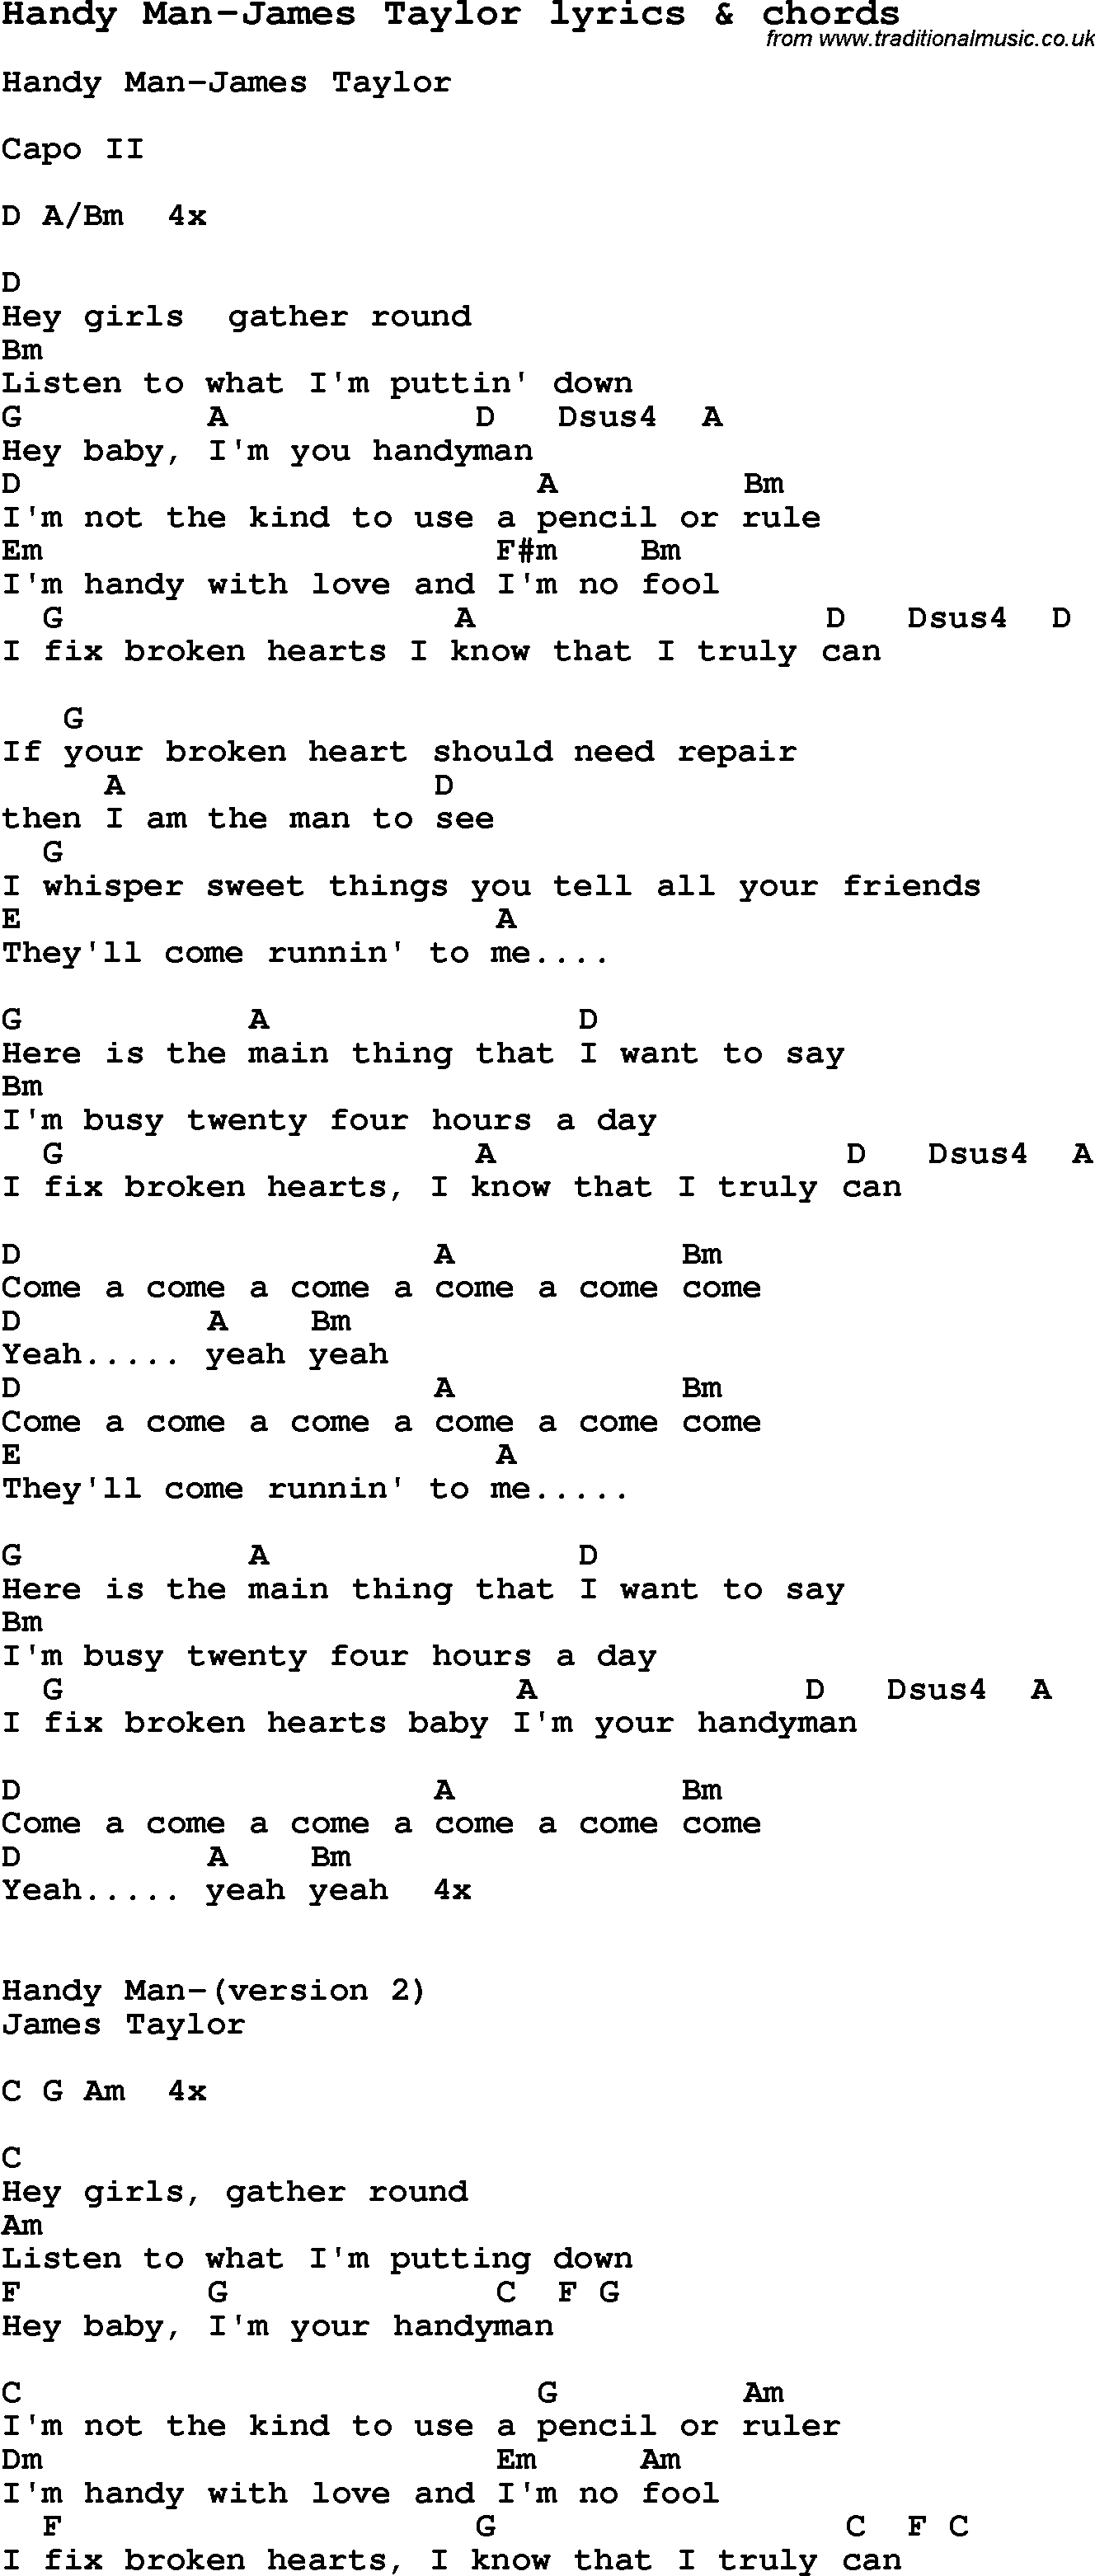 Love Song Lyrics for: Handy Man-James Taylor with chords for Ukulele, Guitar Banjo etc.